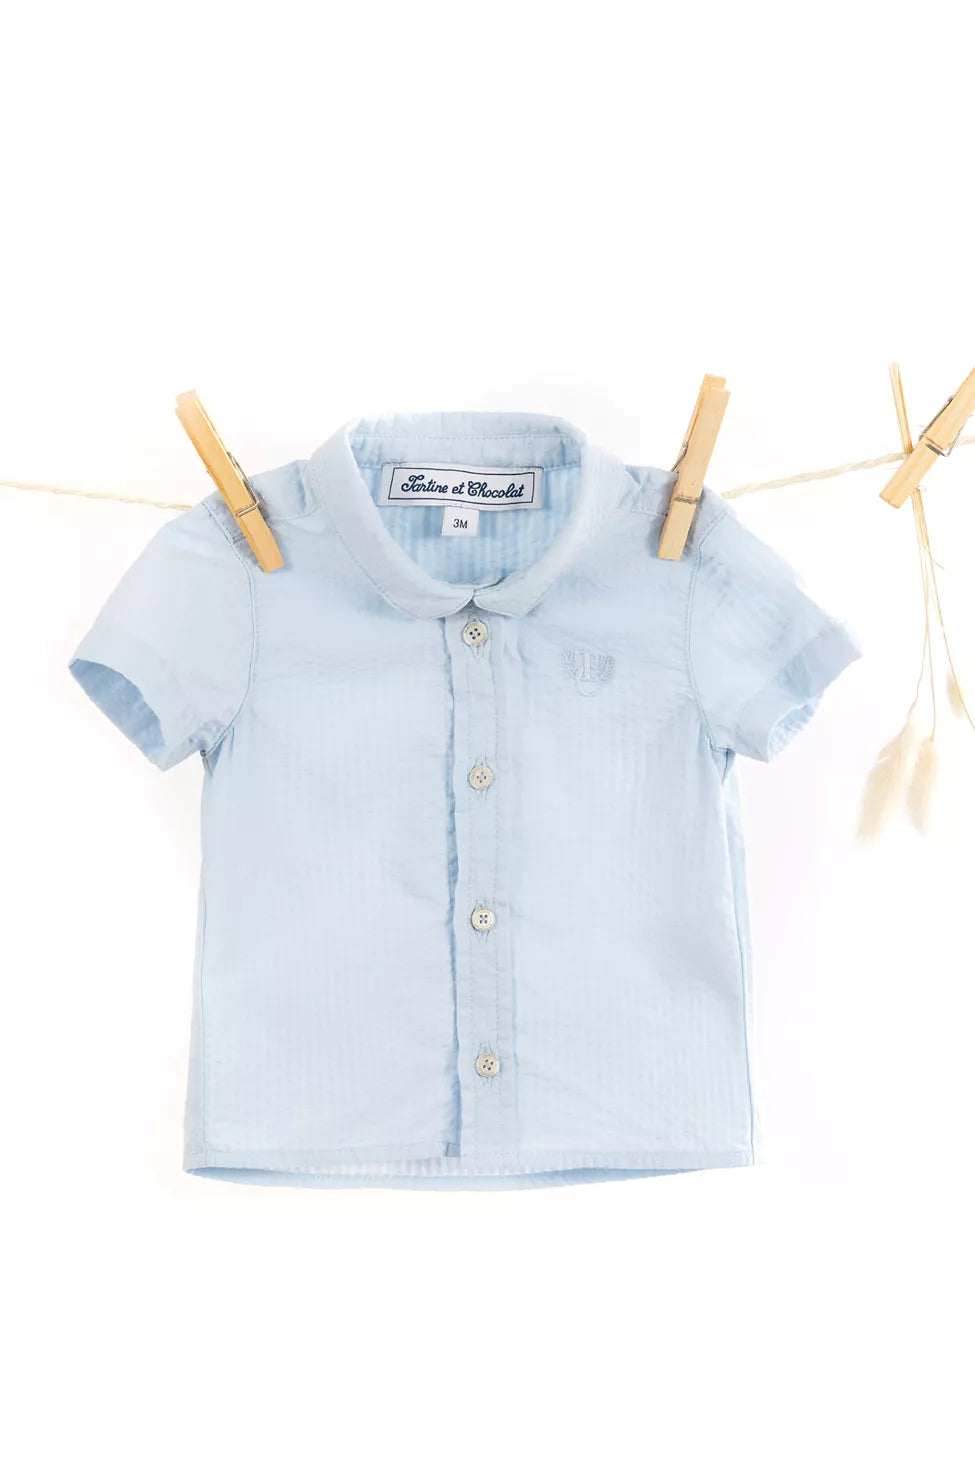 Tartine Baby Short Sleeve Button Down - Bleu Ciel